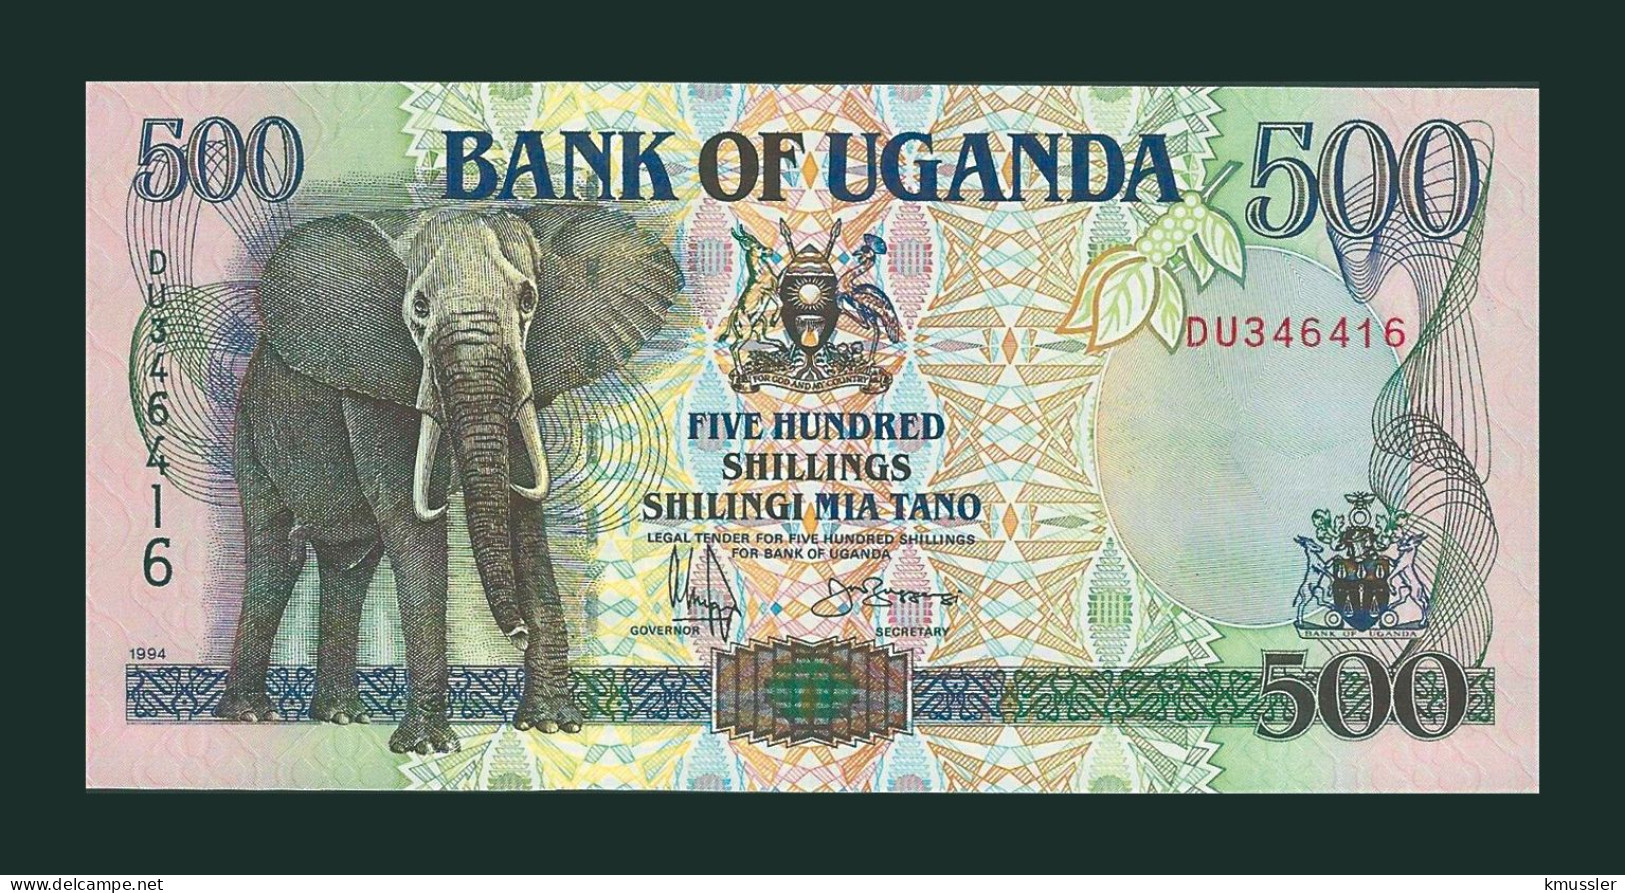 # # # Banknote Uganda 500 Shillings 1994 (P-35) UNC # # # - Oeganda